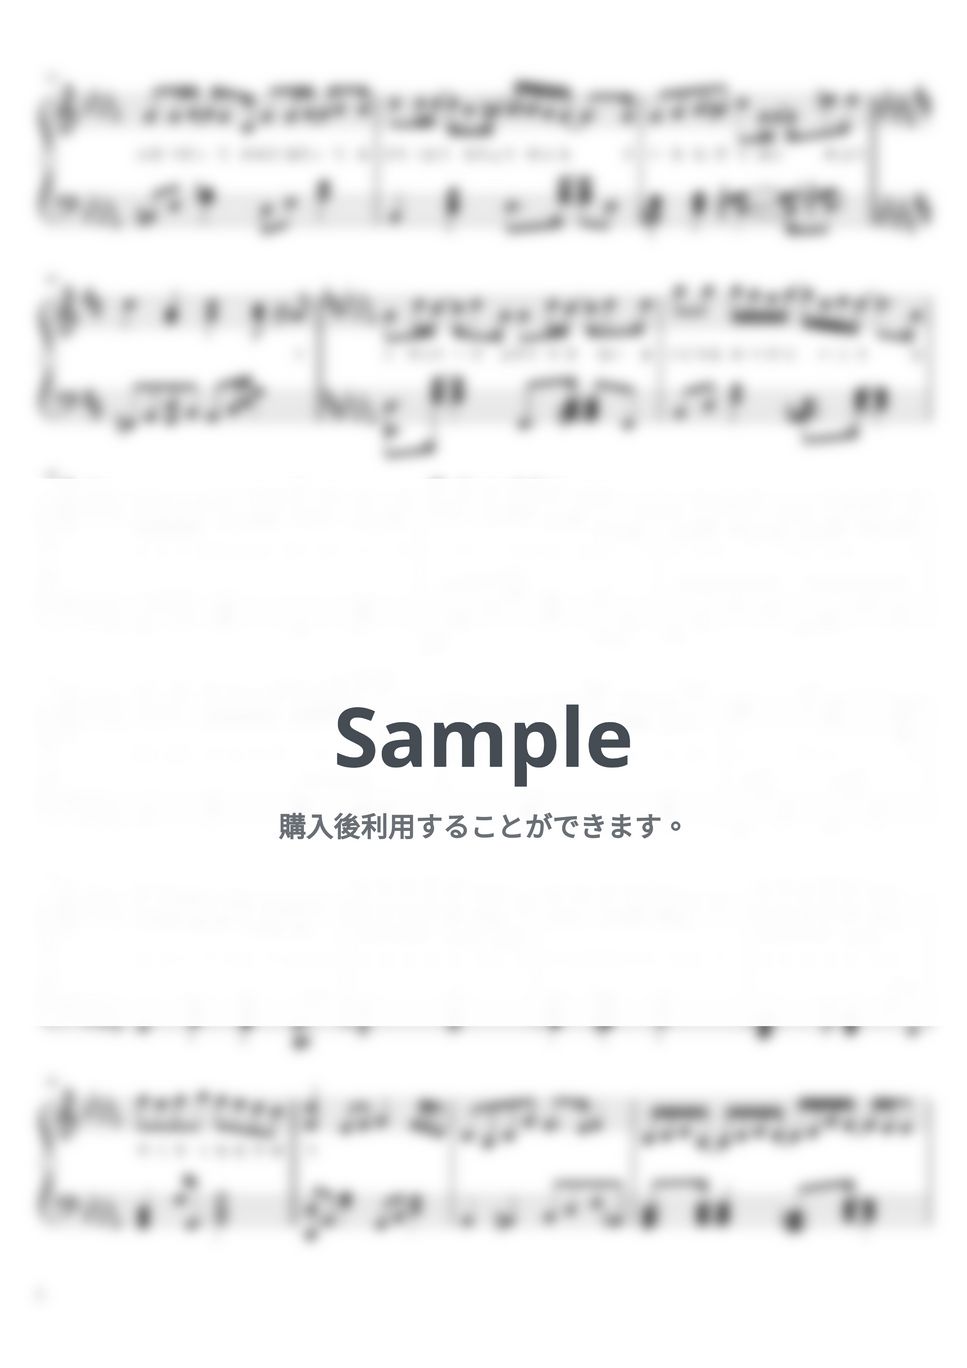 いれいす - Promise (いれいす,ピアノ,Promise) by harupi